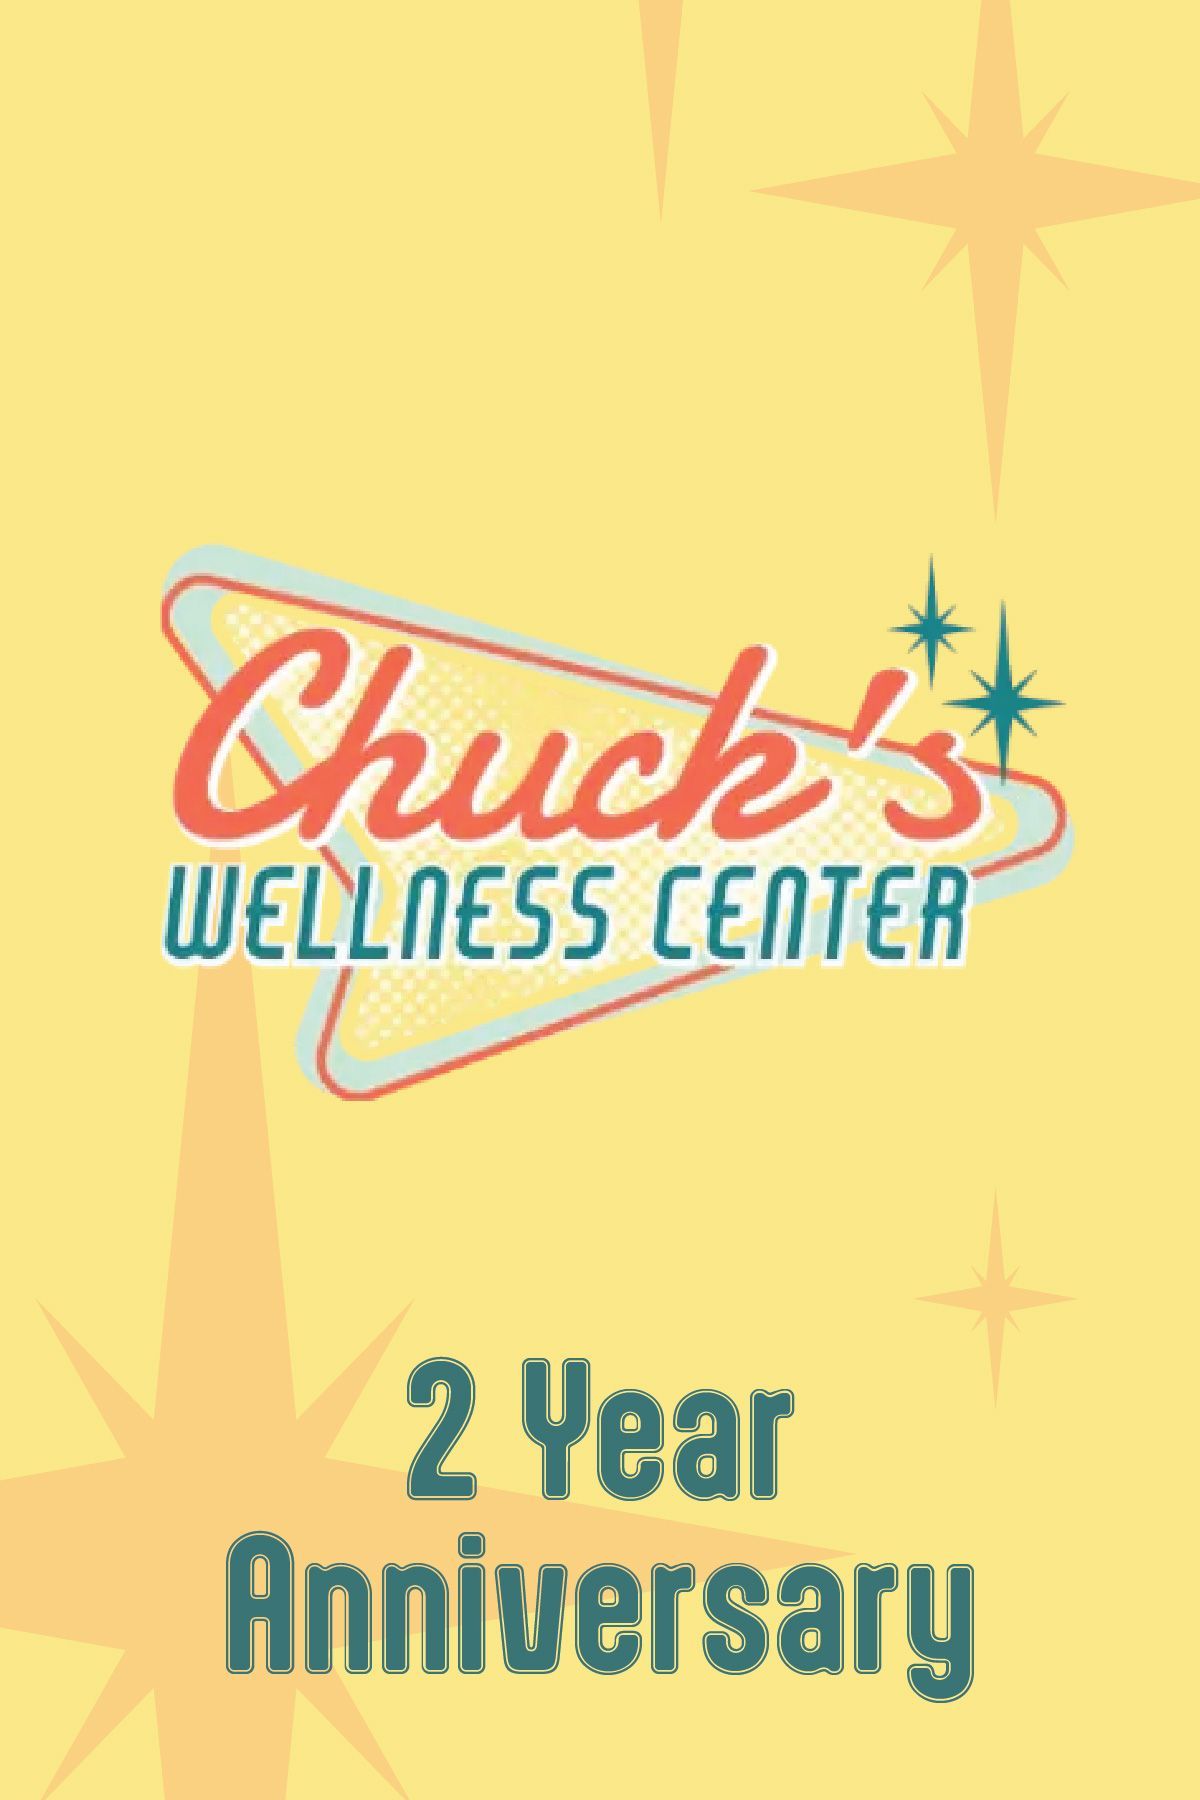 Chuck's Wellness Center